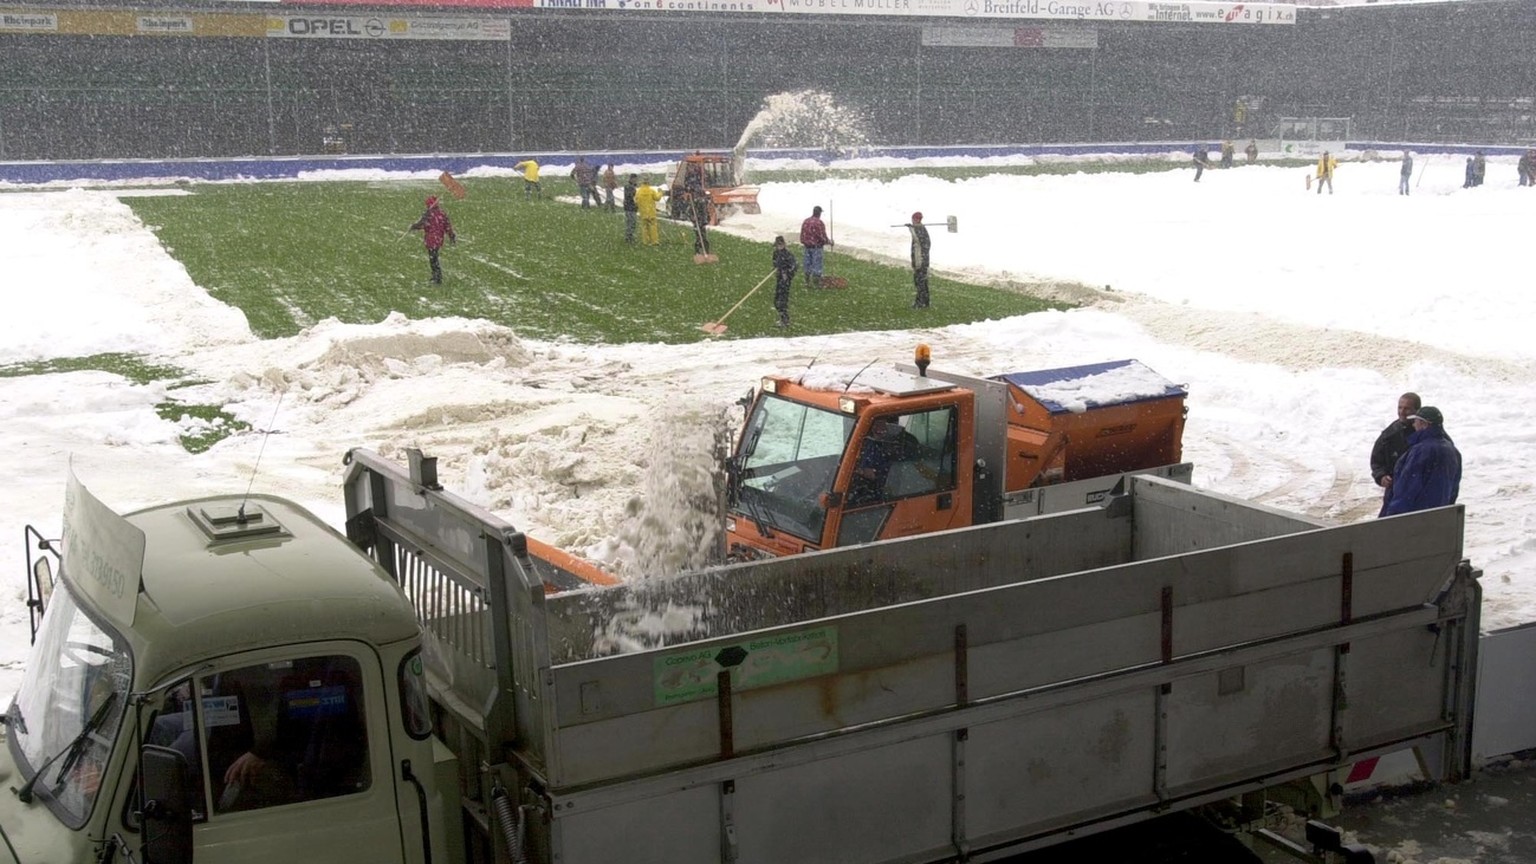 Das Fussballstadion Espenmoos in St. Gallen wird am Sonntag, 22. April 2001, von rund 50 freiwilligen Helfern von der dicken Schneeschicht befreit, die ueber Nacht gefallen war. Am 22. April 2001 soll ...